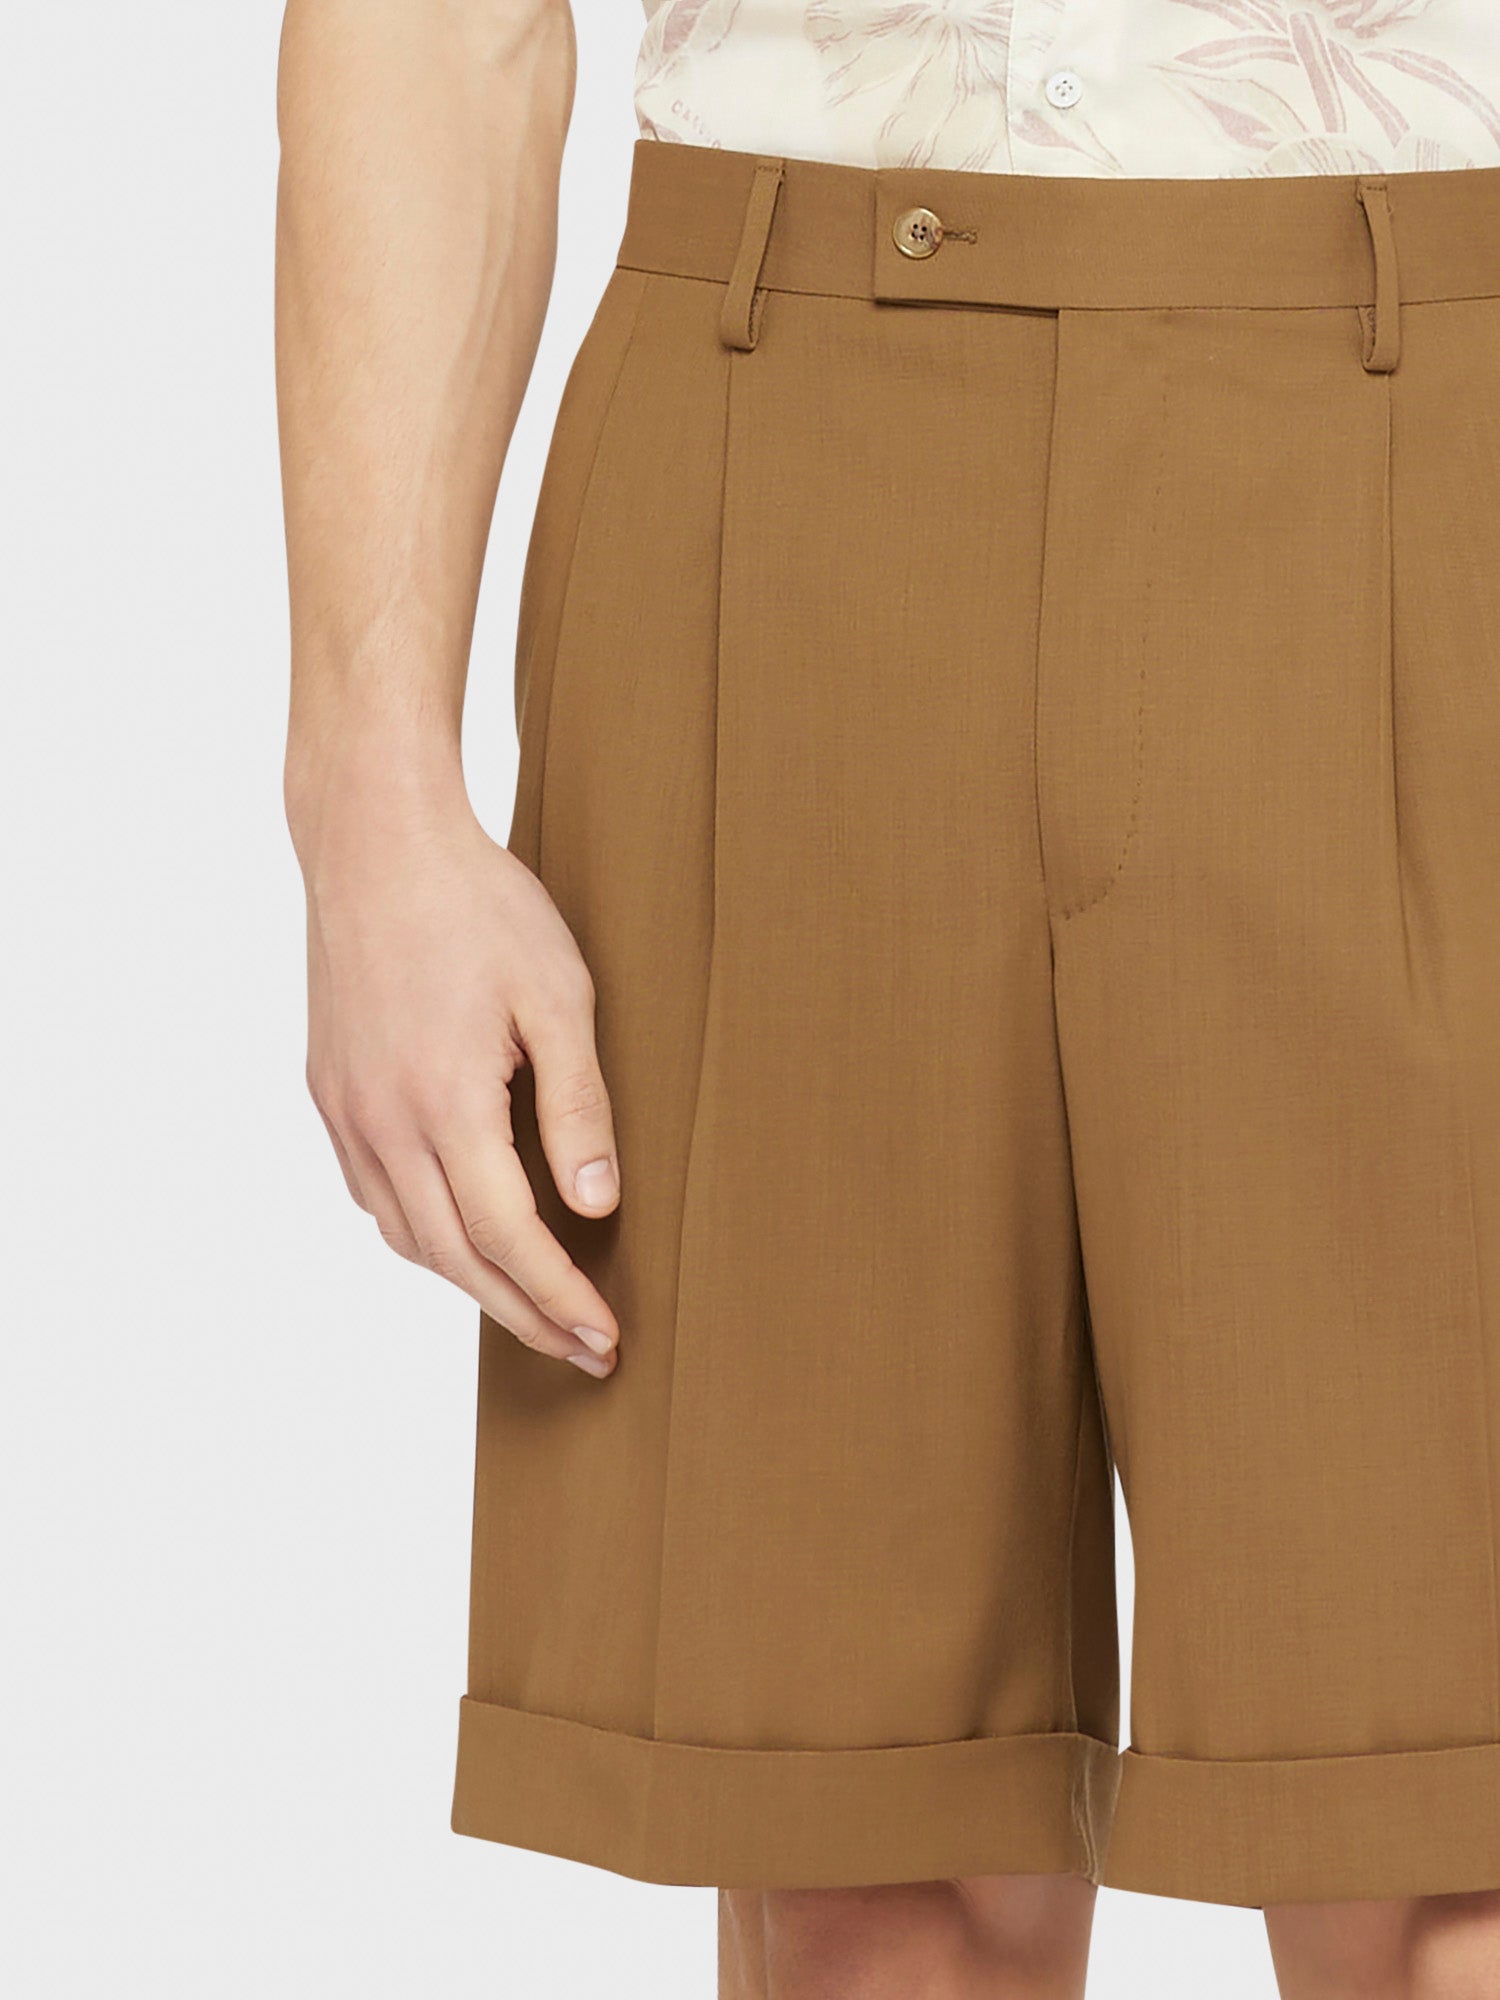 Caruso Menswear Abbigliamento Pantaloni Uomo Bermuda in tropical di lana marrone beige Houdini dettaglio